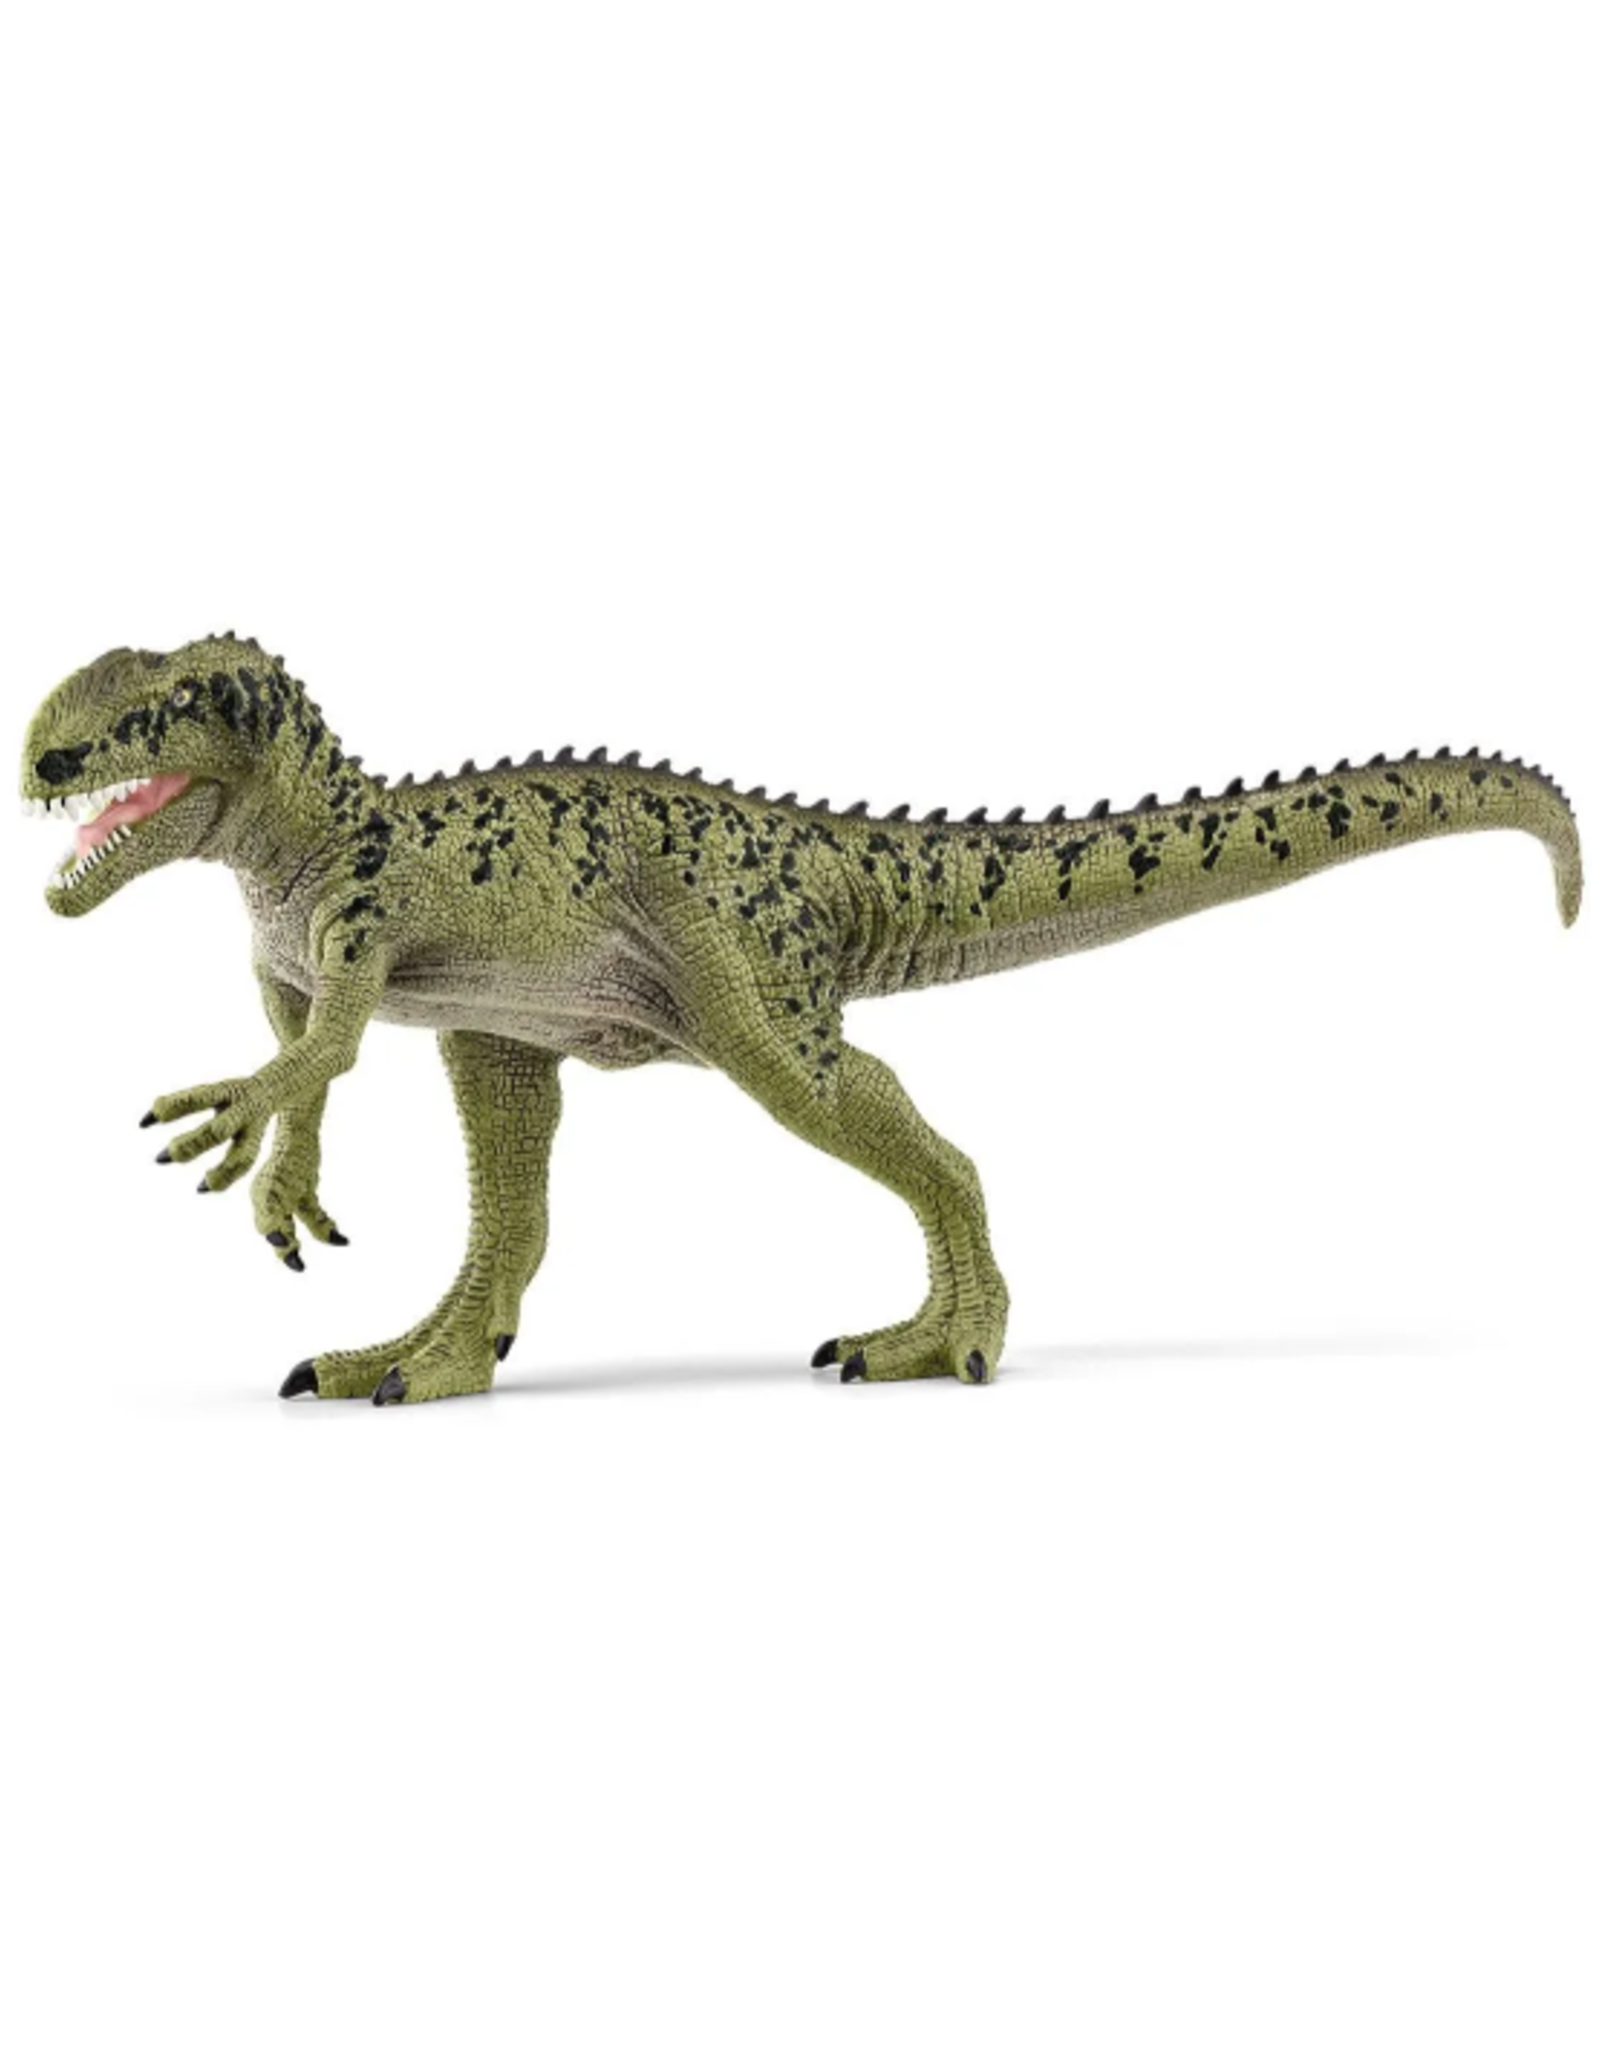 Schleich Schleich - Dinosaurs - 15035 - Monolophosaurus